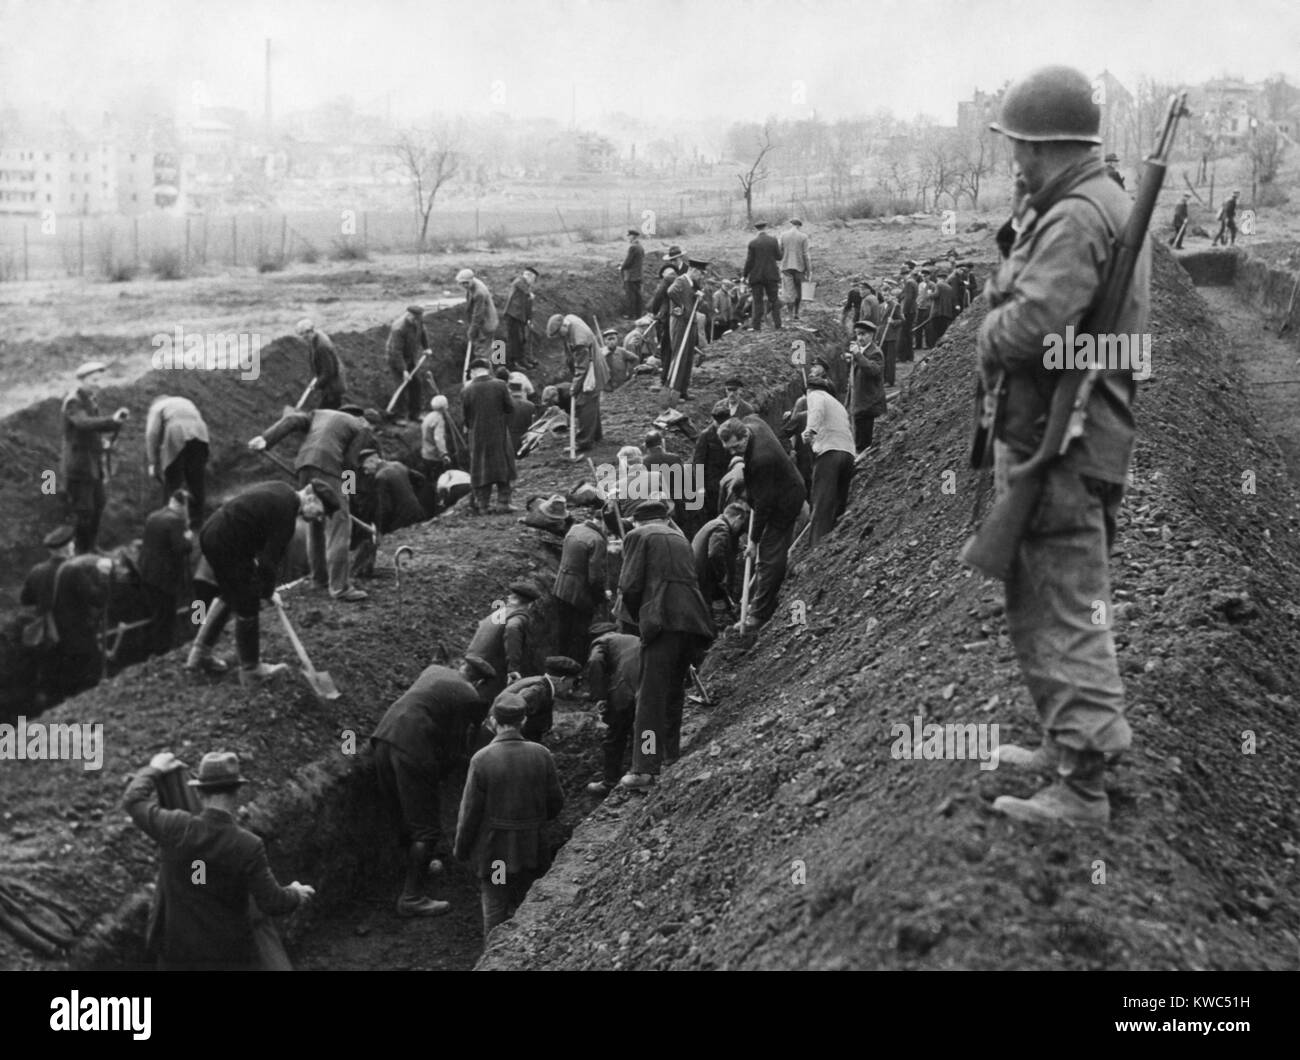 Soldat américain garde la réinhumation de victimes des camps de concentration par des civils allemands. Ca. Avril-mai 1945. Lieu non identifié en Allemagne, la Seconde Guerre mondiale (BSLOC 2  2015 13 23) Banque D'Images